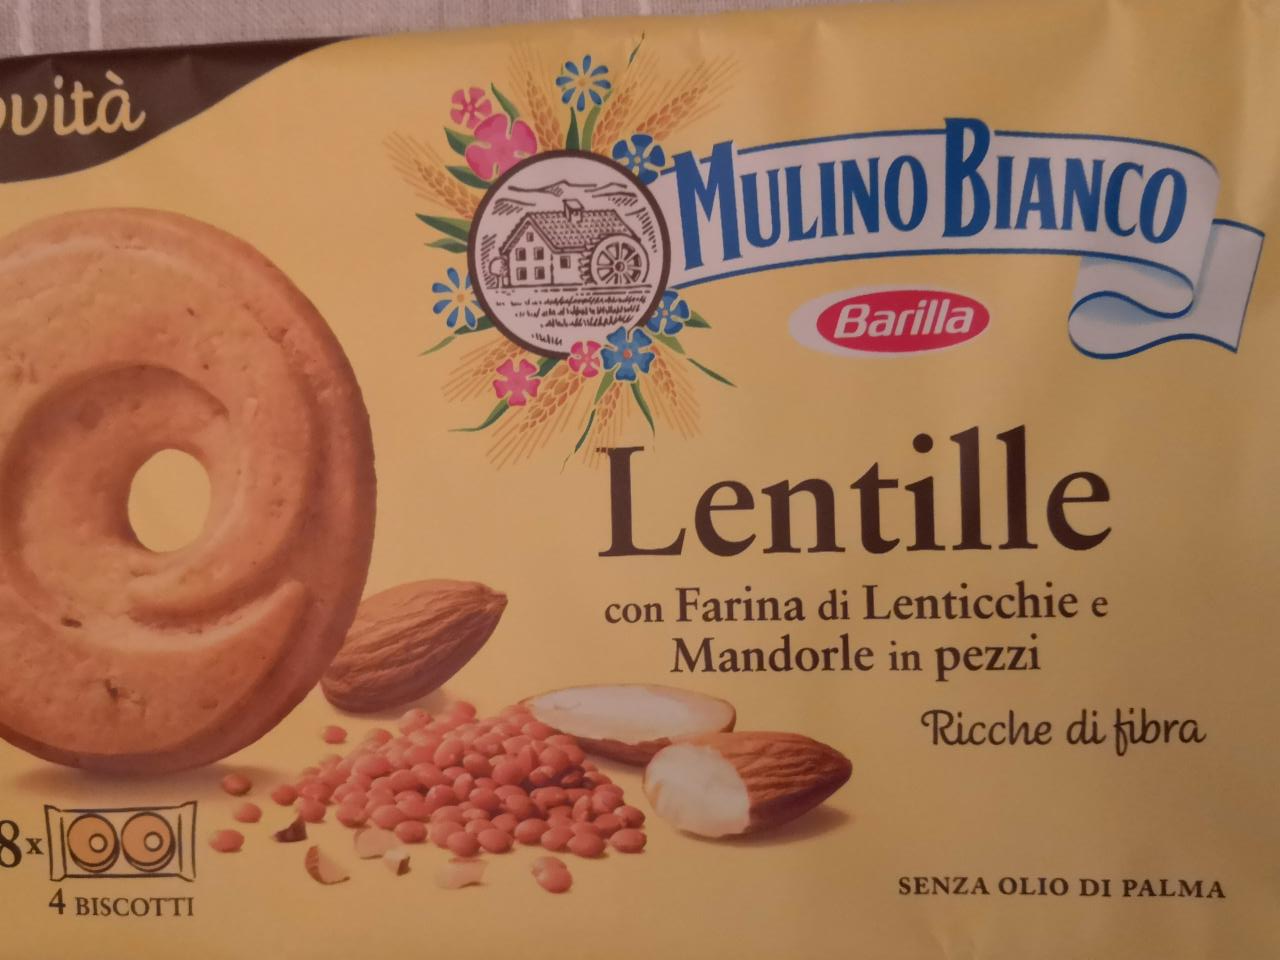 Fotografie - Lentille con Farina di Lenticchie e Mandorle in pezzi Mulino Bianco